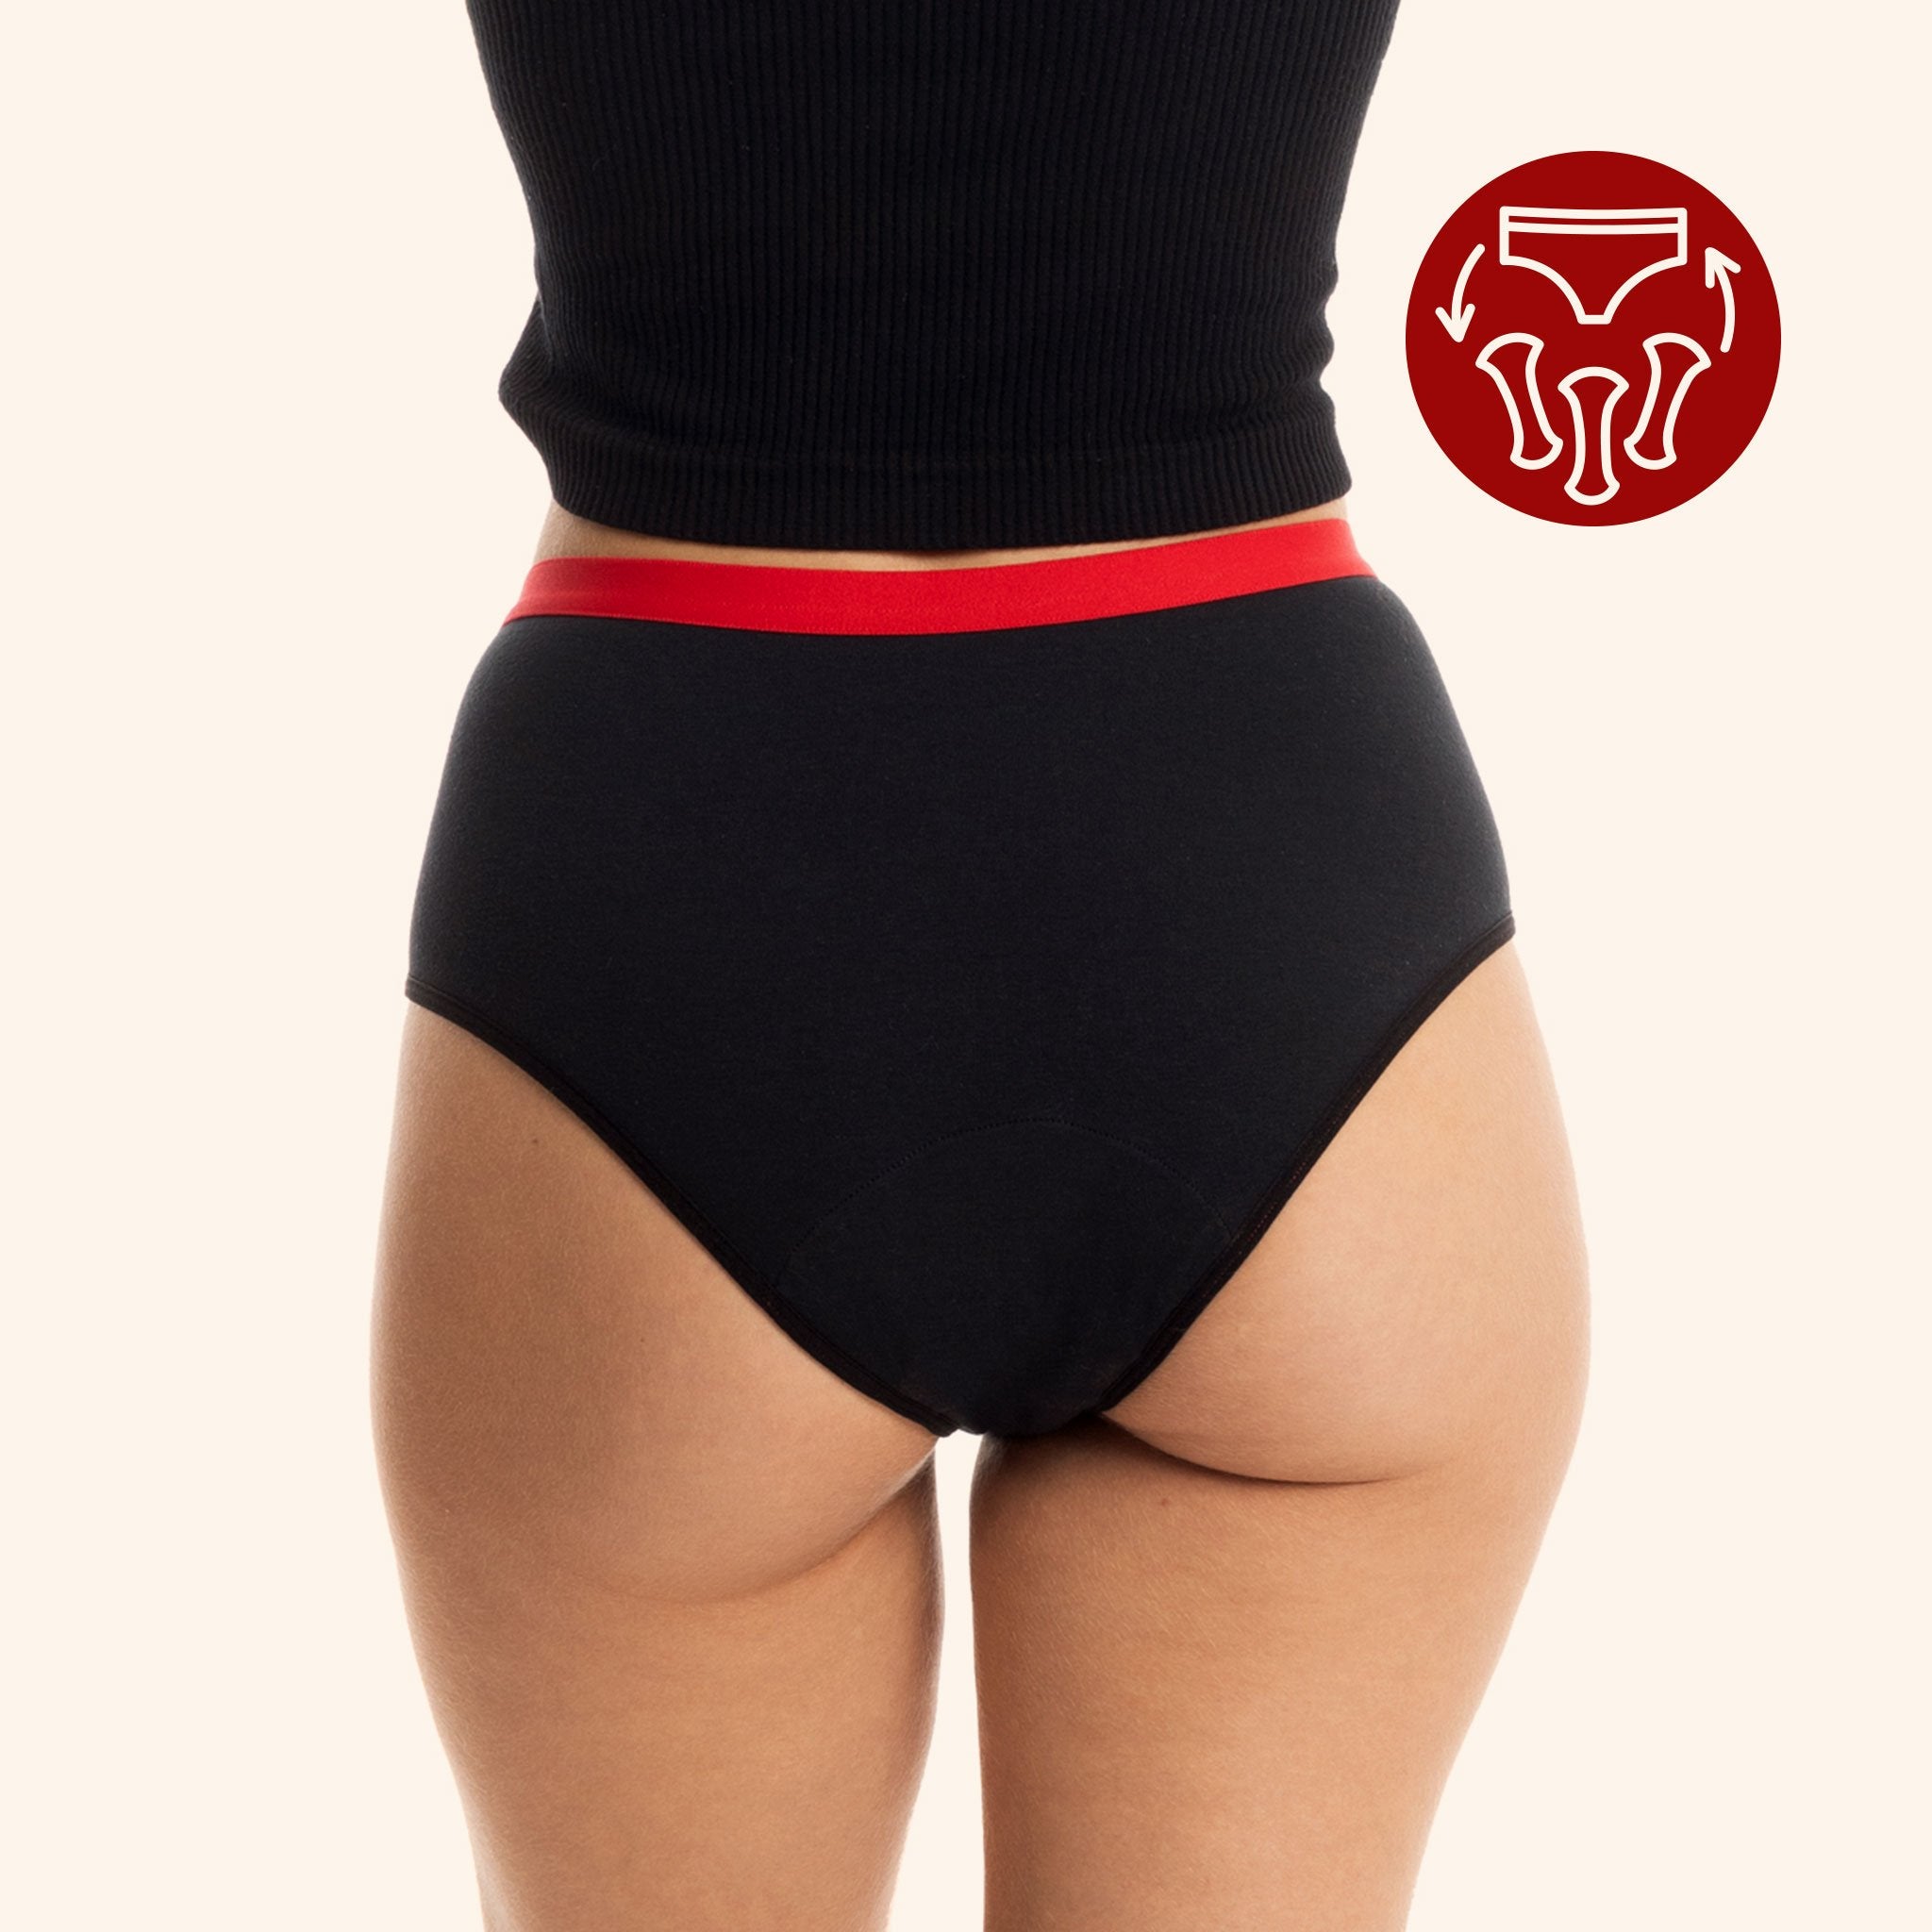 Highty ✦ 3-in-1 Period Underwear